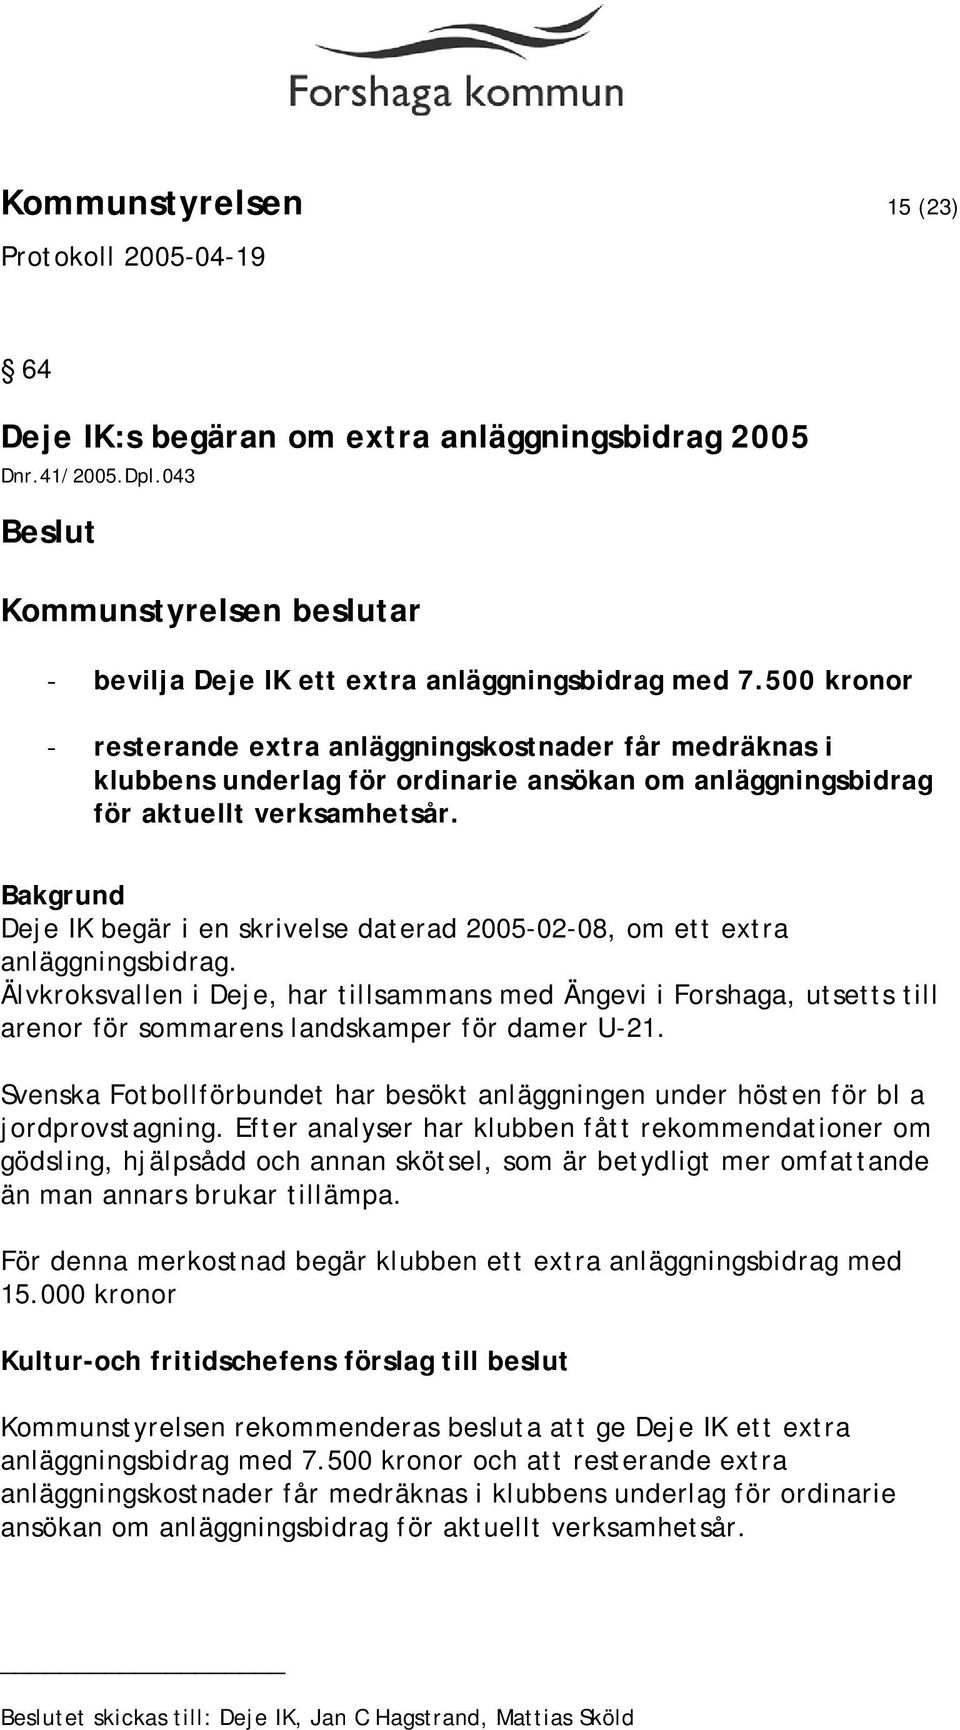 Deje IK begär i en skrivelse daterad 2005-02-08, om ett extra anläggningsbidrag.